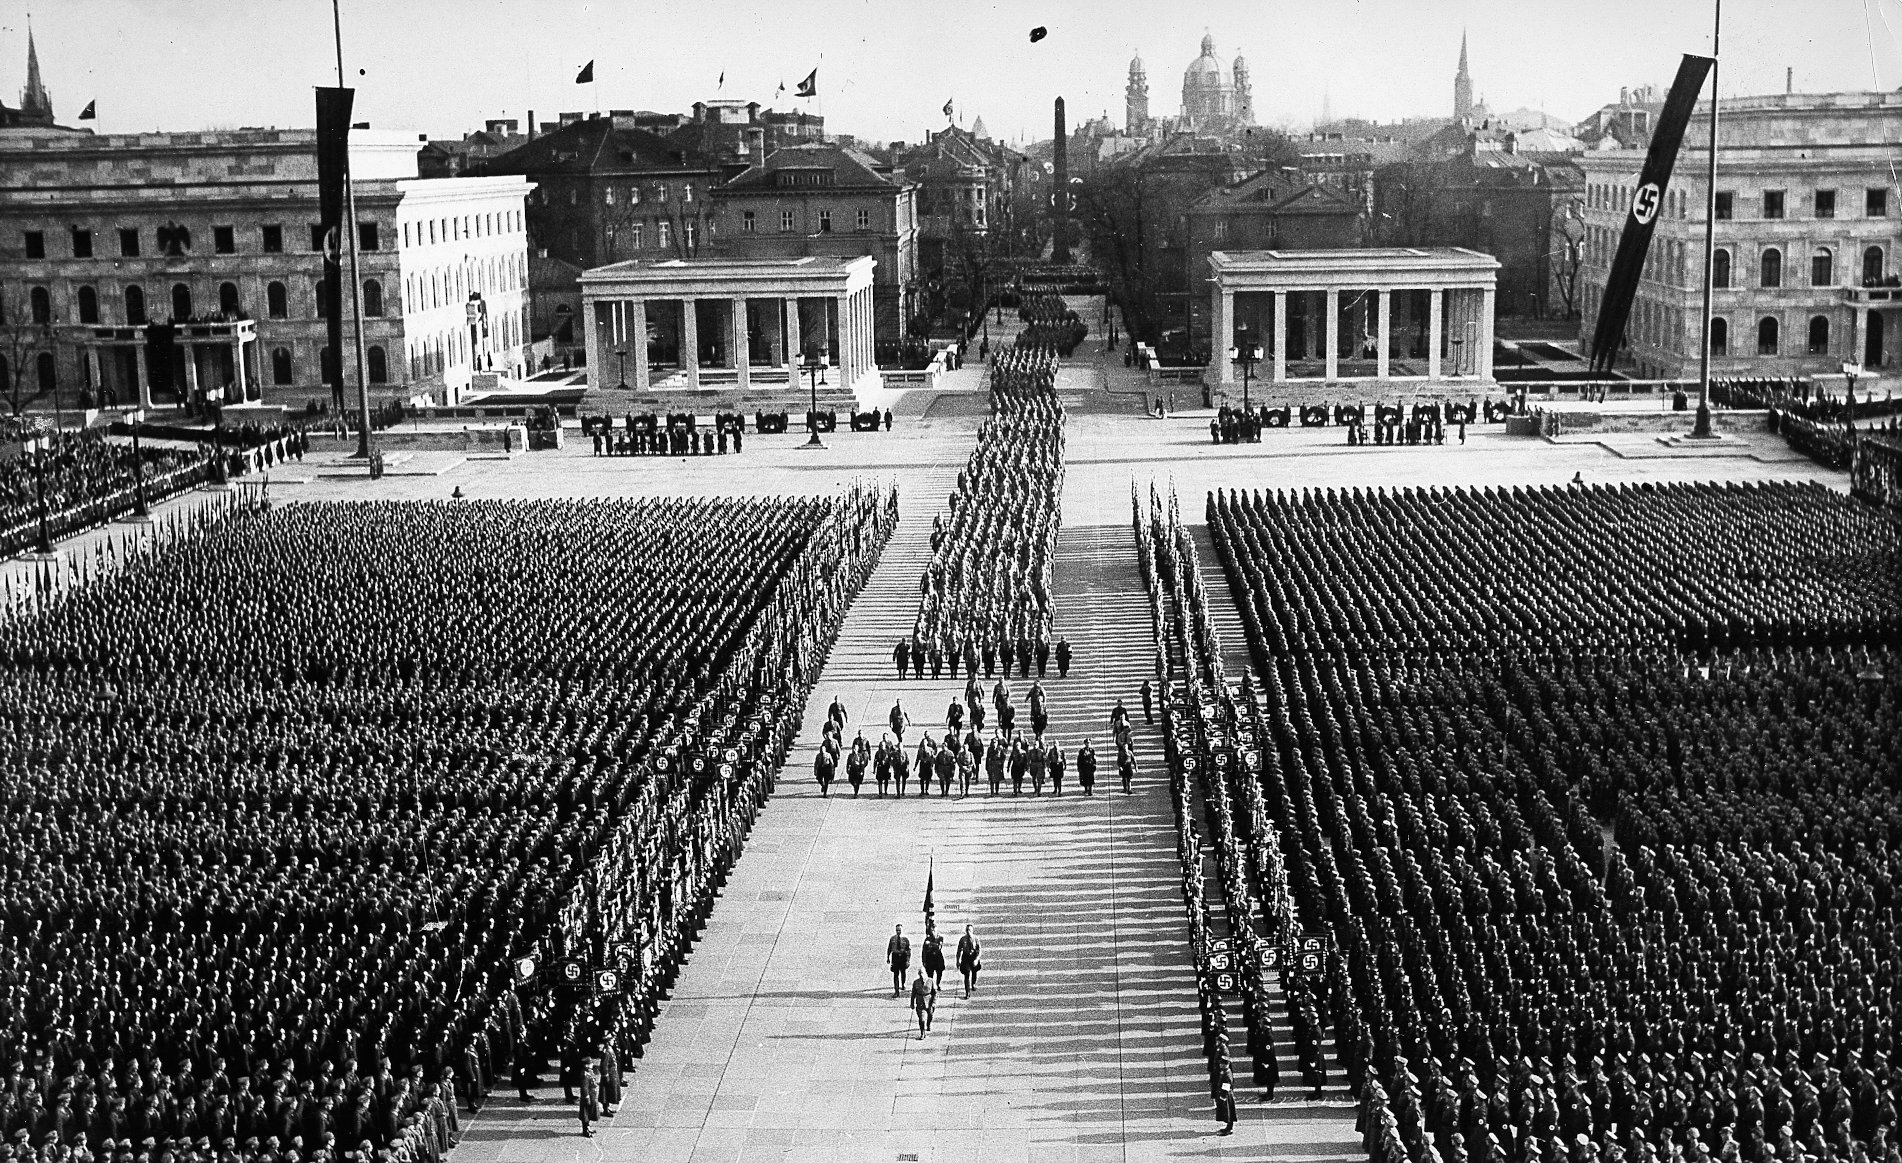 [Translate to English:] Gamalı haç bayraklarıyla süslenmiş Königsplatz'ın ortasından, yüzlerce üniformalı adamın sıralandığı, bayrak taşıyıcılarının önderlik ettiği bir cenaze alayı  geçiyor.